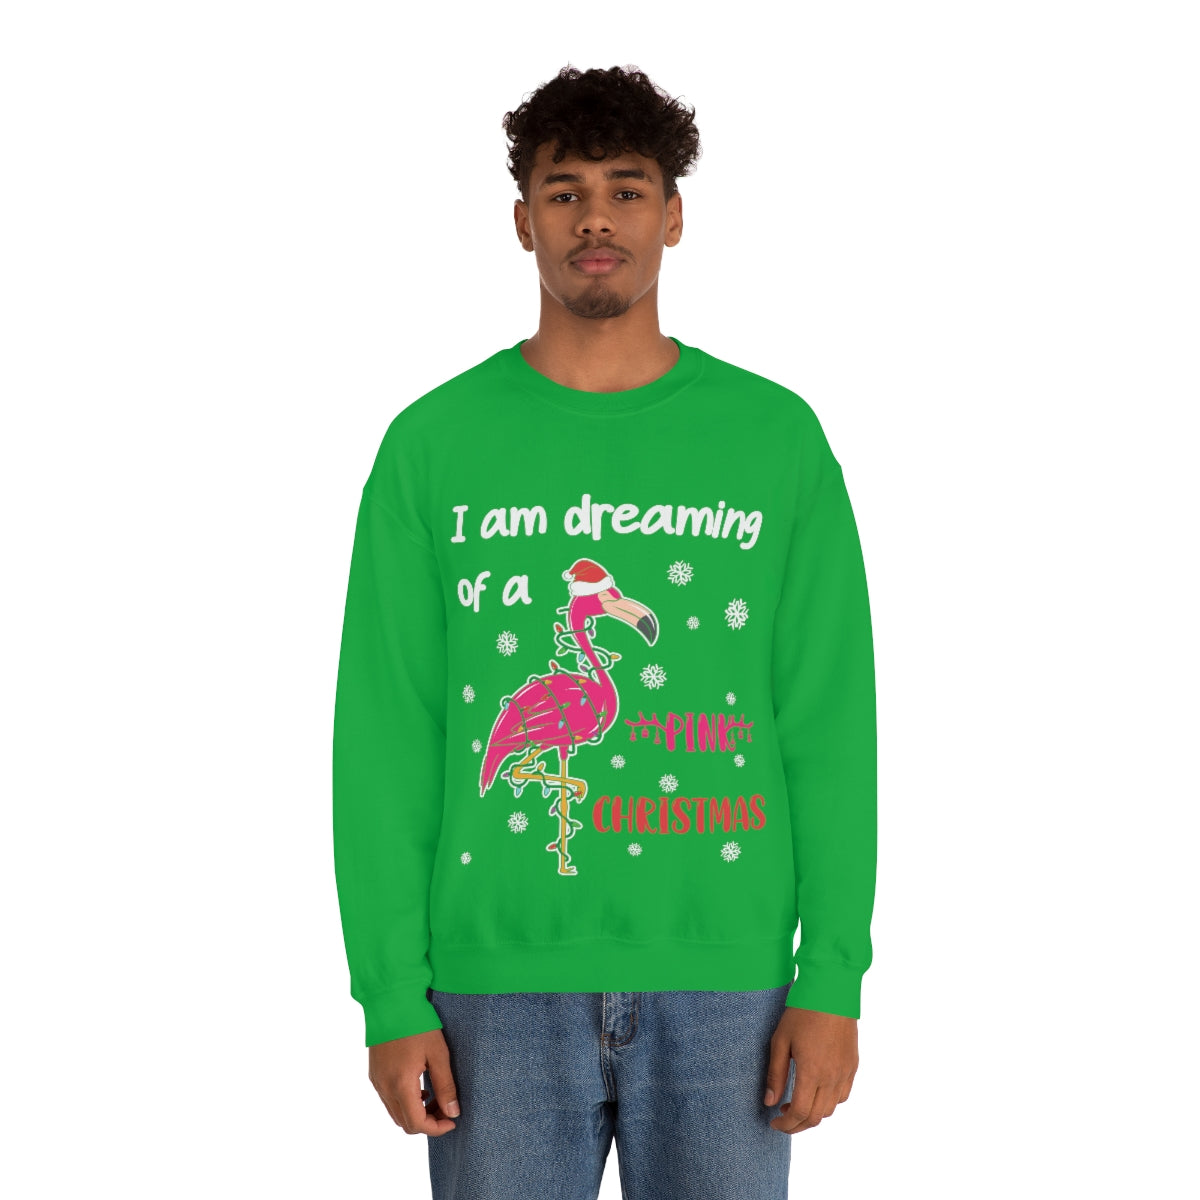 Merry Christmas Unisex Sweatshirts , Sweatshirt , Women Sweatshirt , Men Sweatshirt ,Crewneck Sweatshirt, Pink Christmas Printify